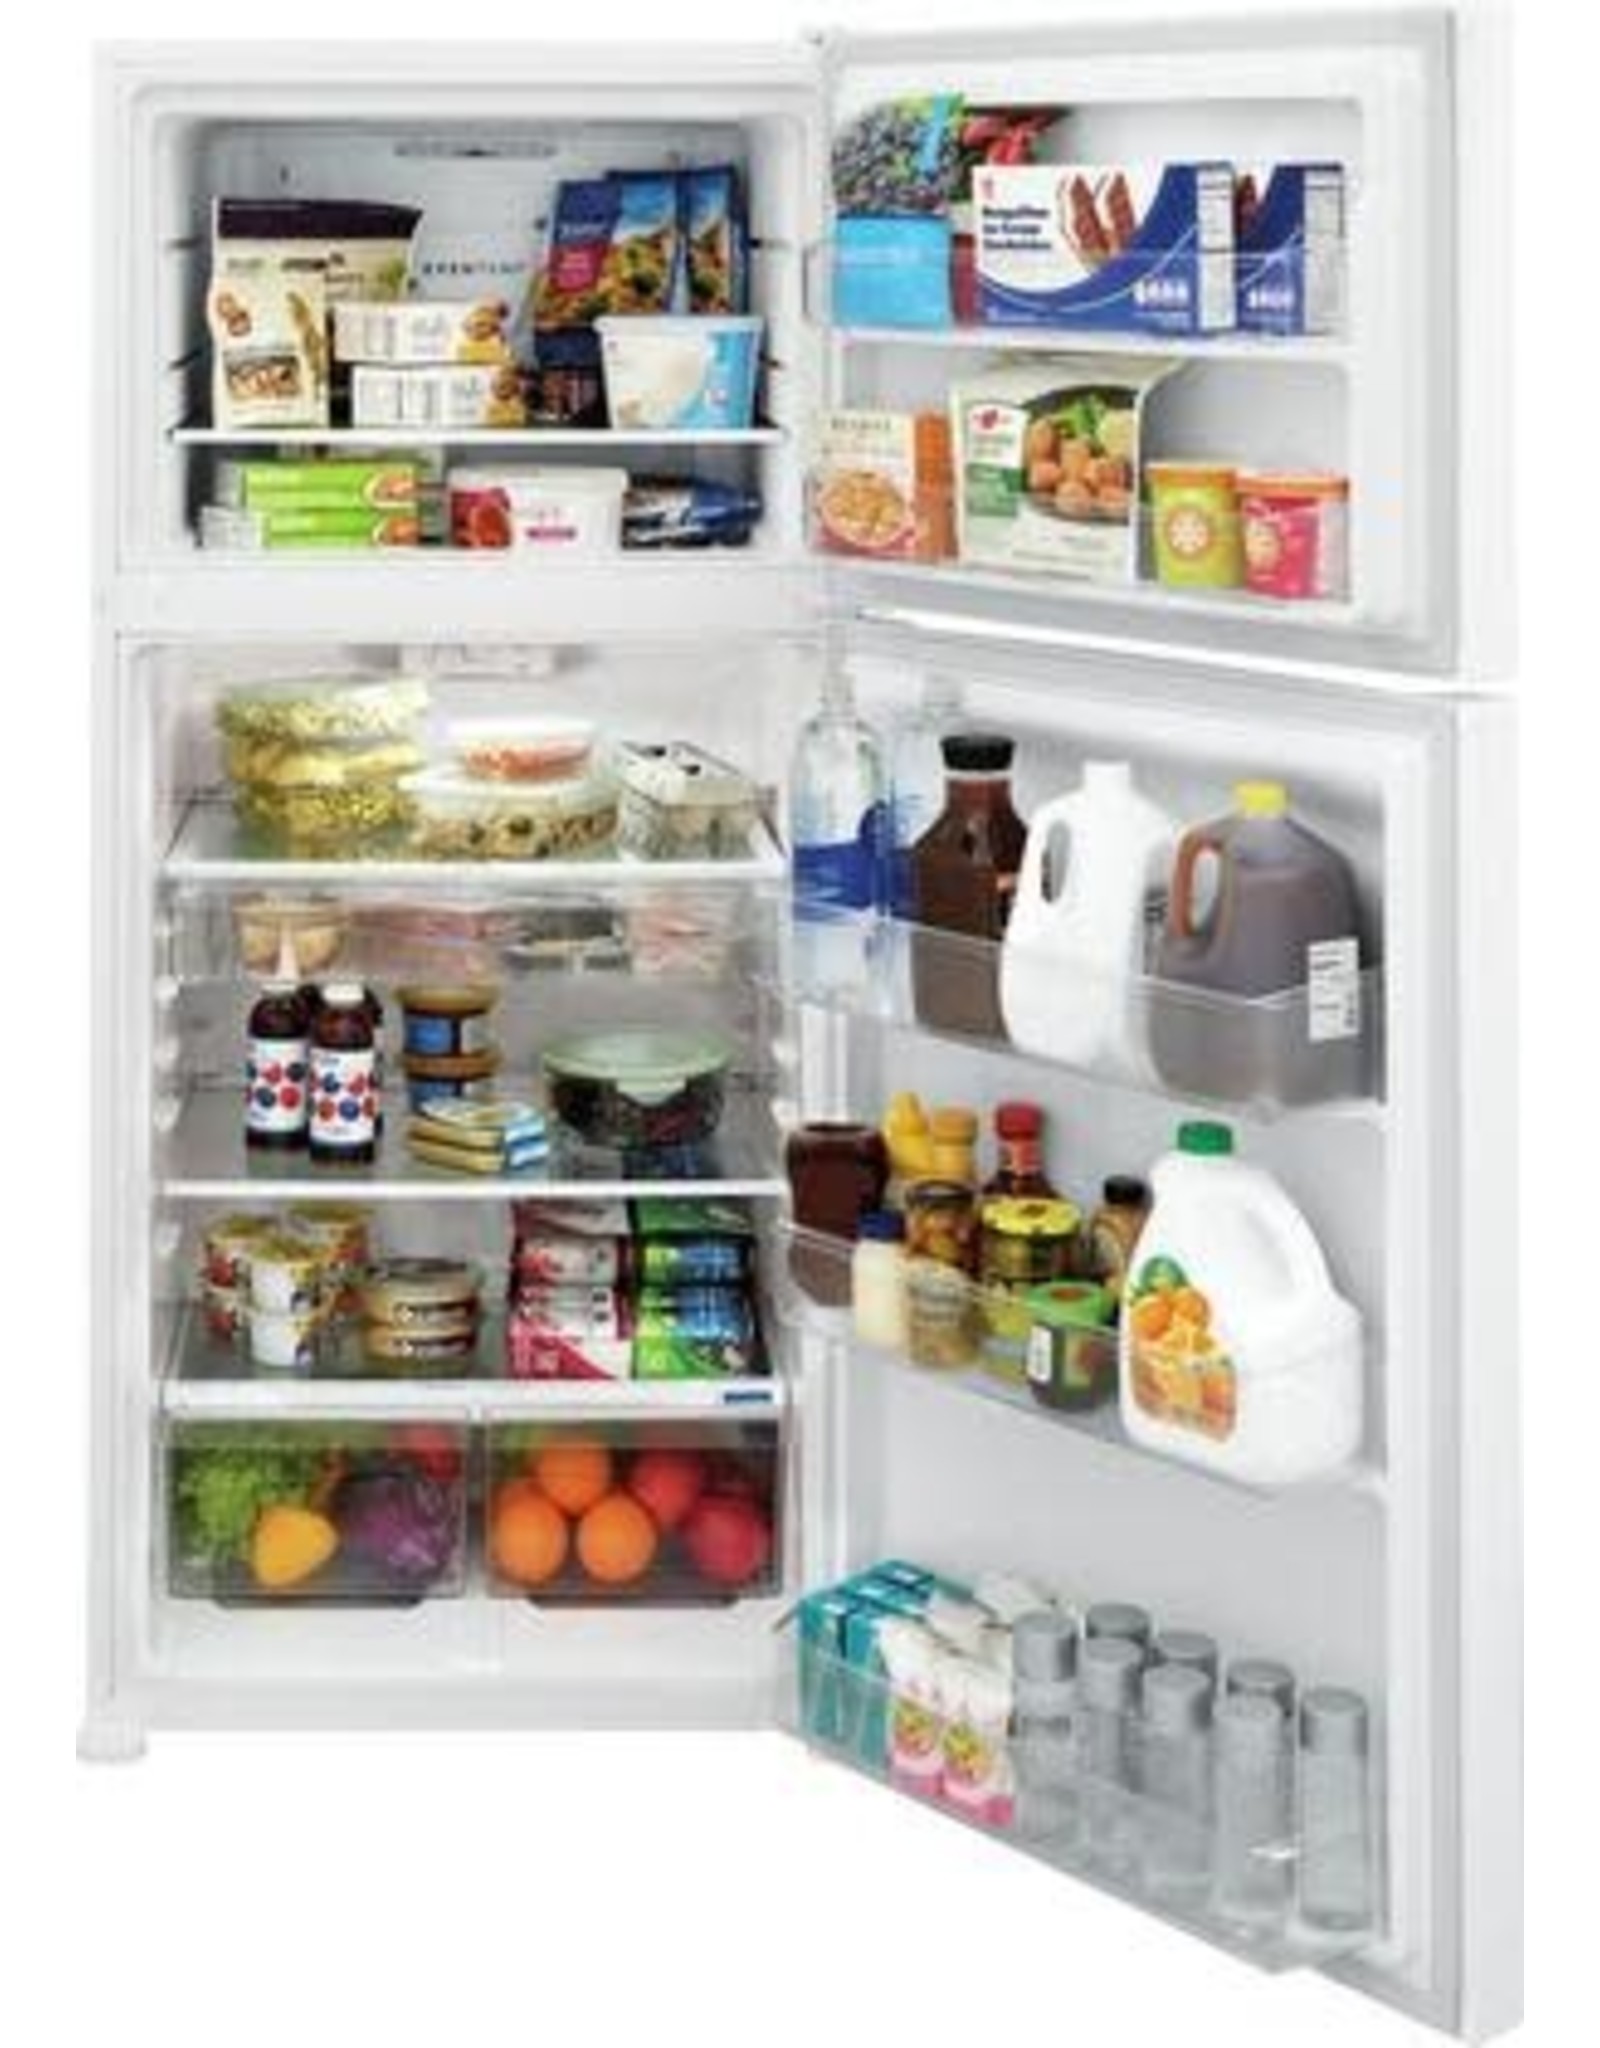 FRIGIDAIRE Frigidaire 30 Inch Freestanding Top Freezer Refrigerator with 20 cu.